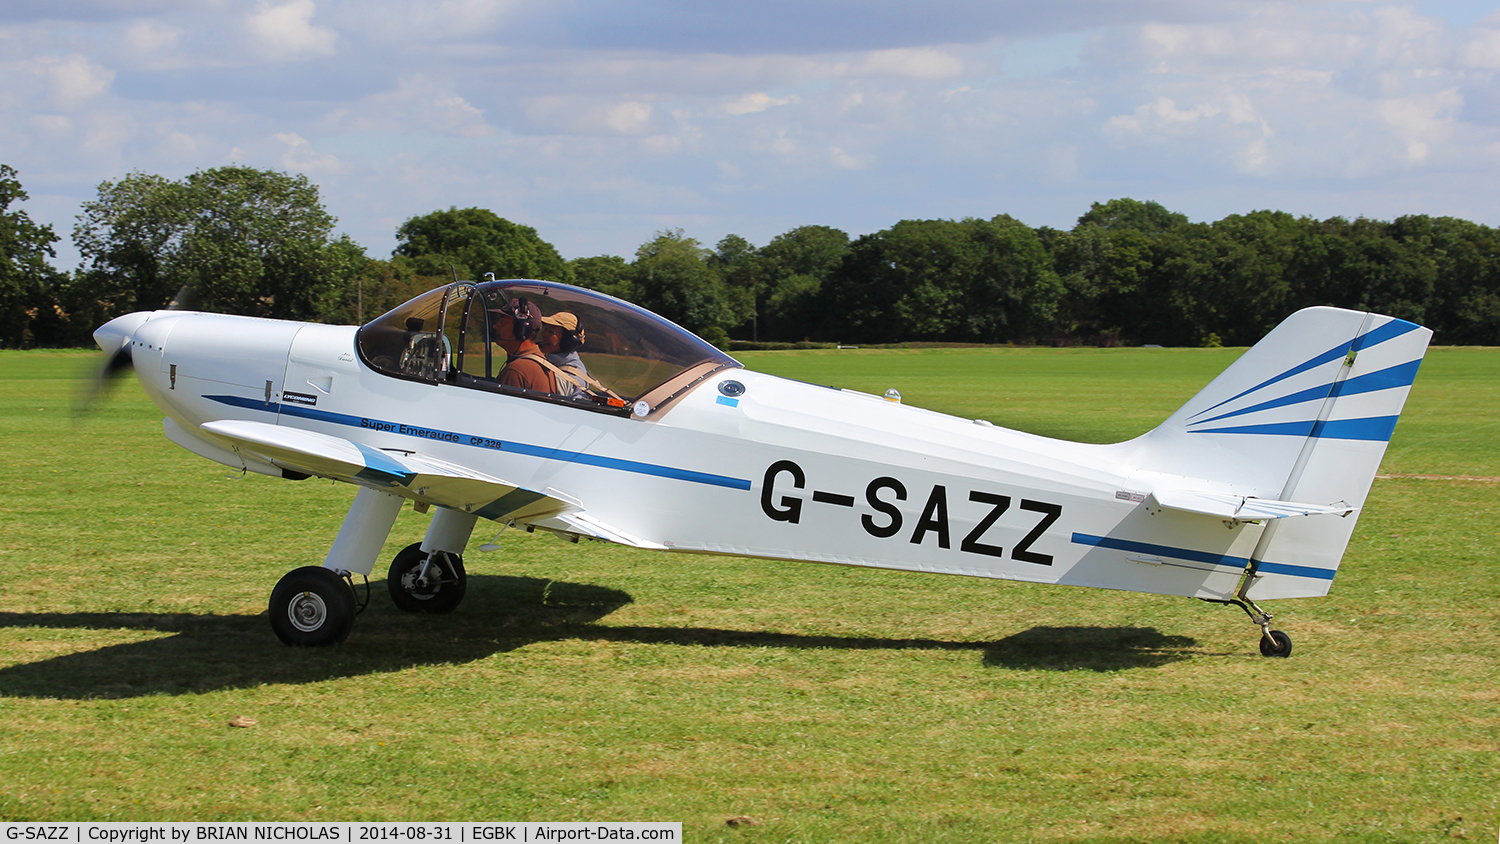 G-SAZZ, 2003 Piel CP-328 Super Emeraude C/N PFA 216-11940, LAA fly in. Sywell